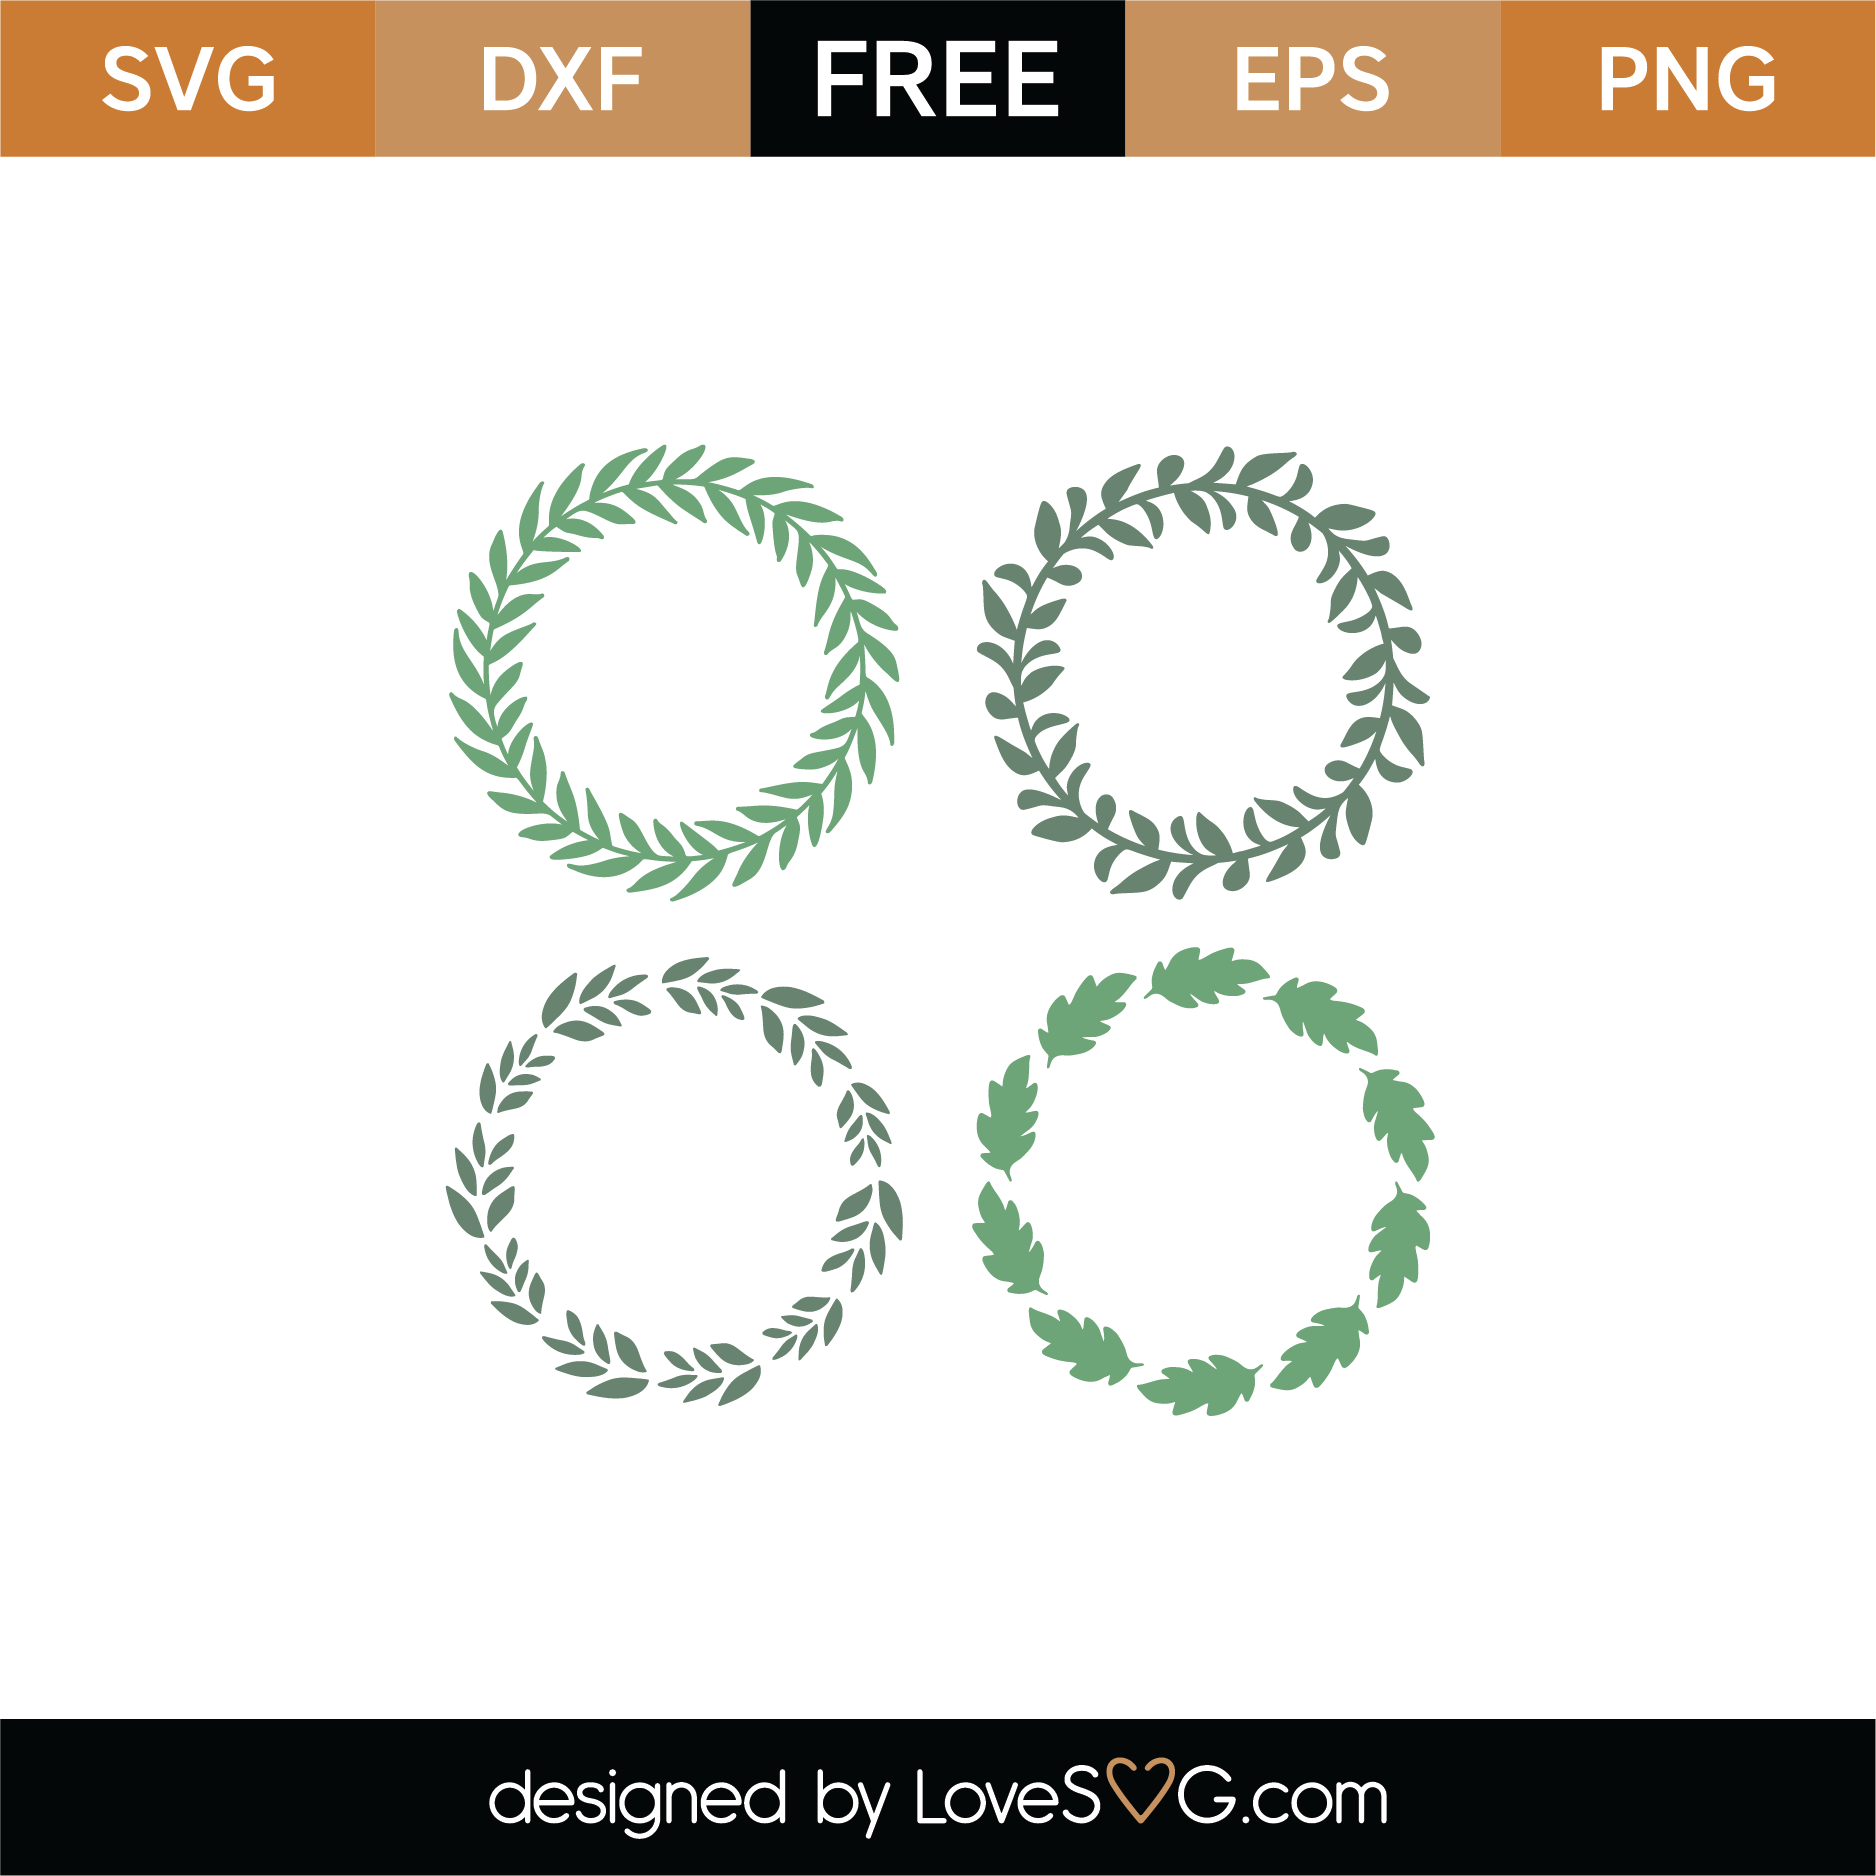 Download Free Spring Monogram Frames SVG Cut File | Lovesvg.com